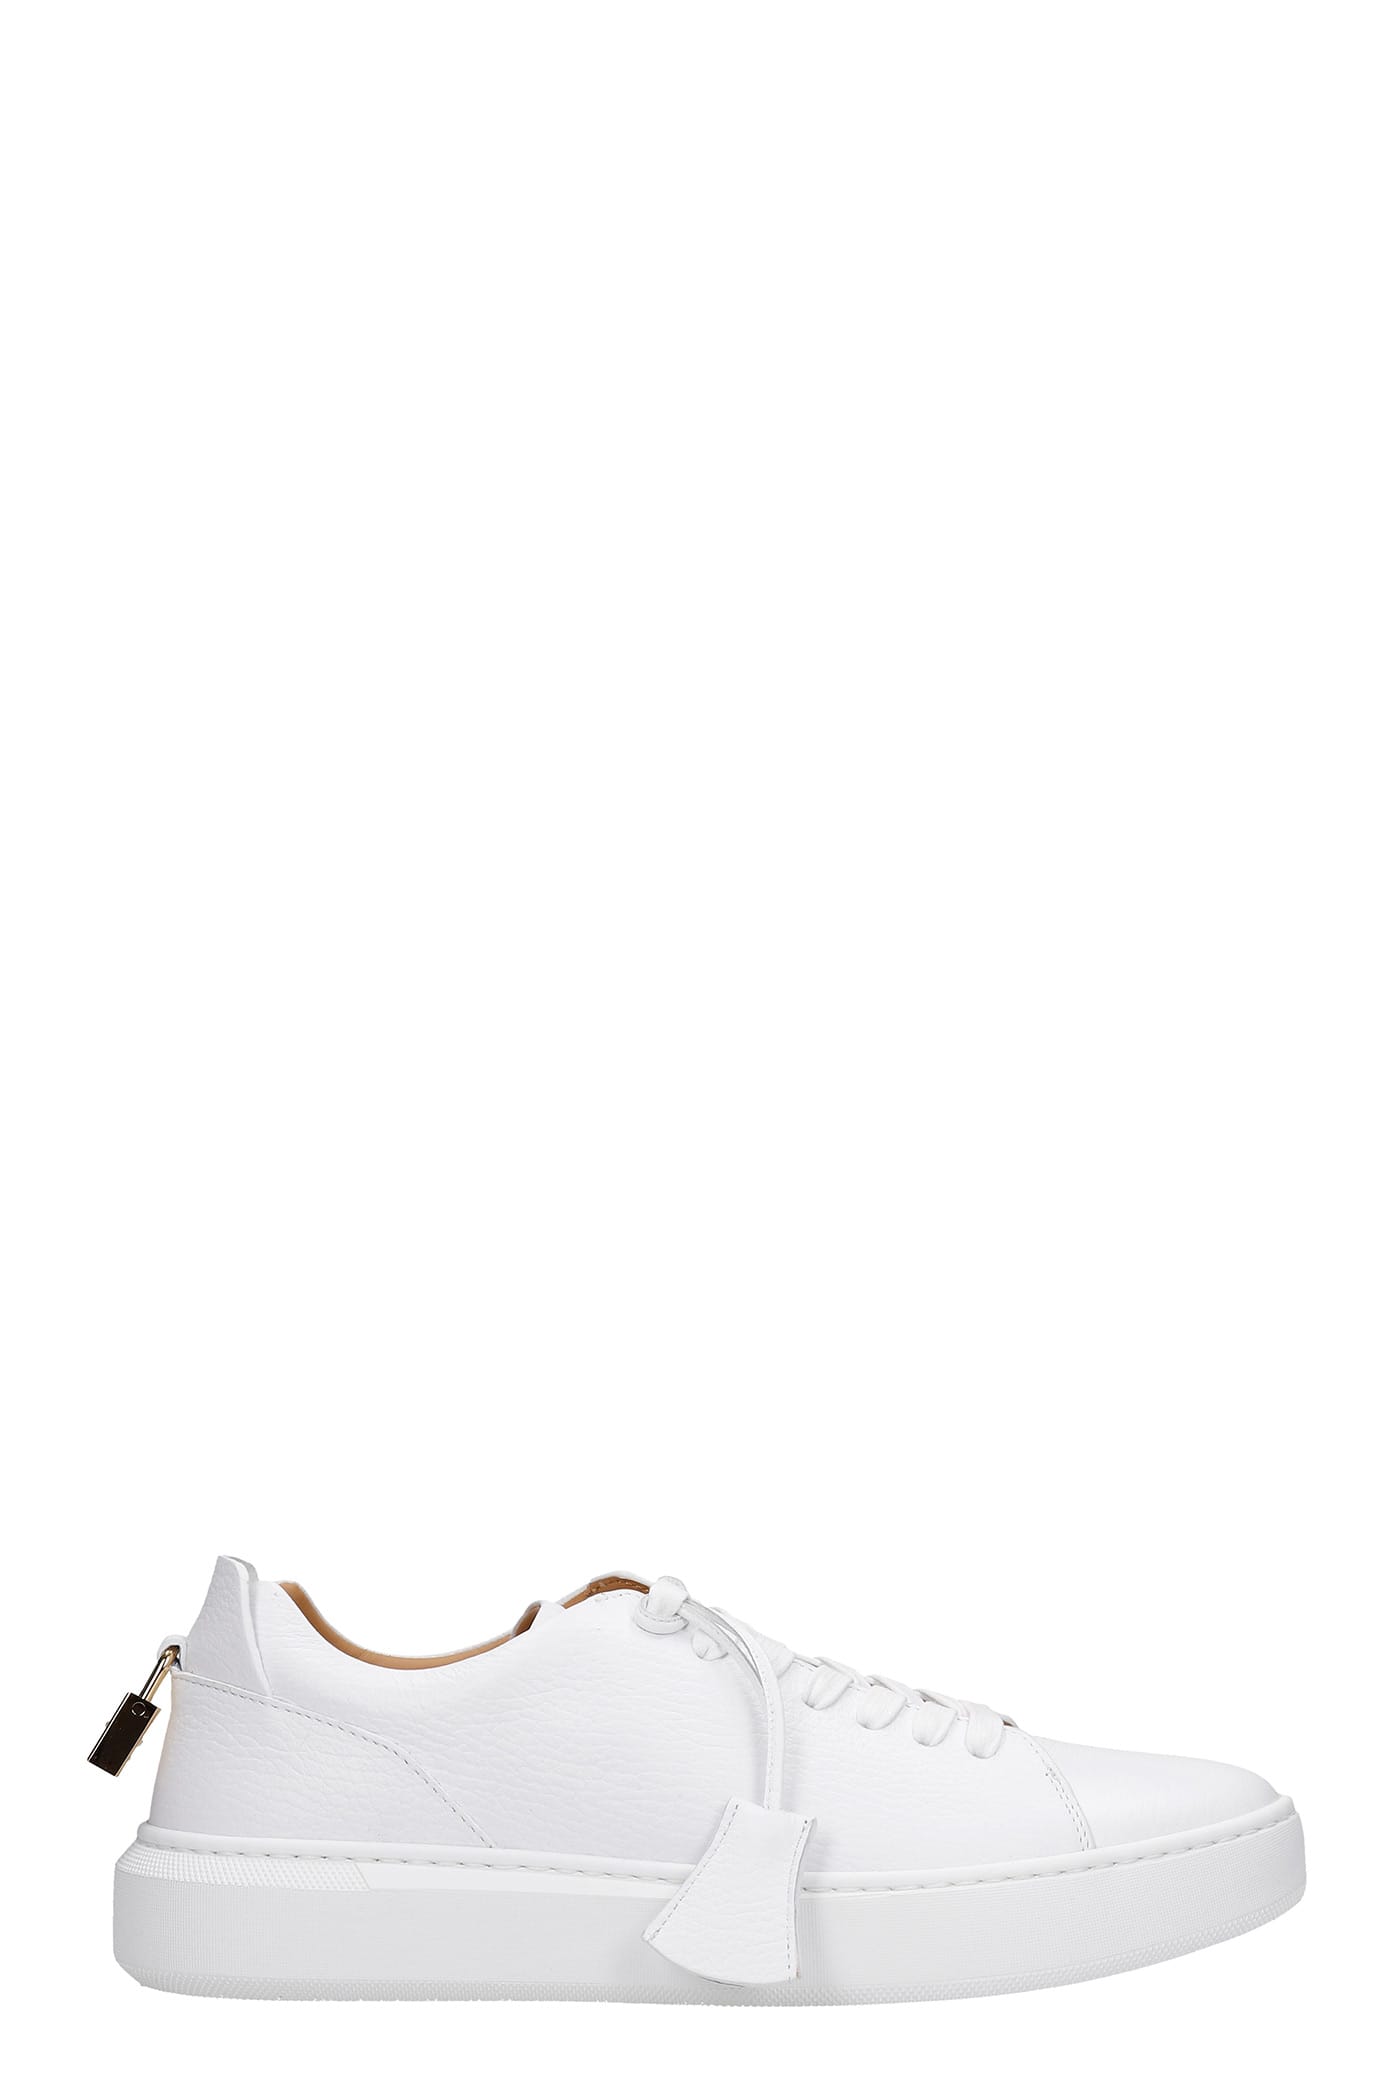 Buscemi Uno Sneakers In White Leather